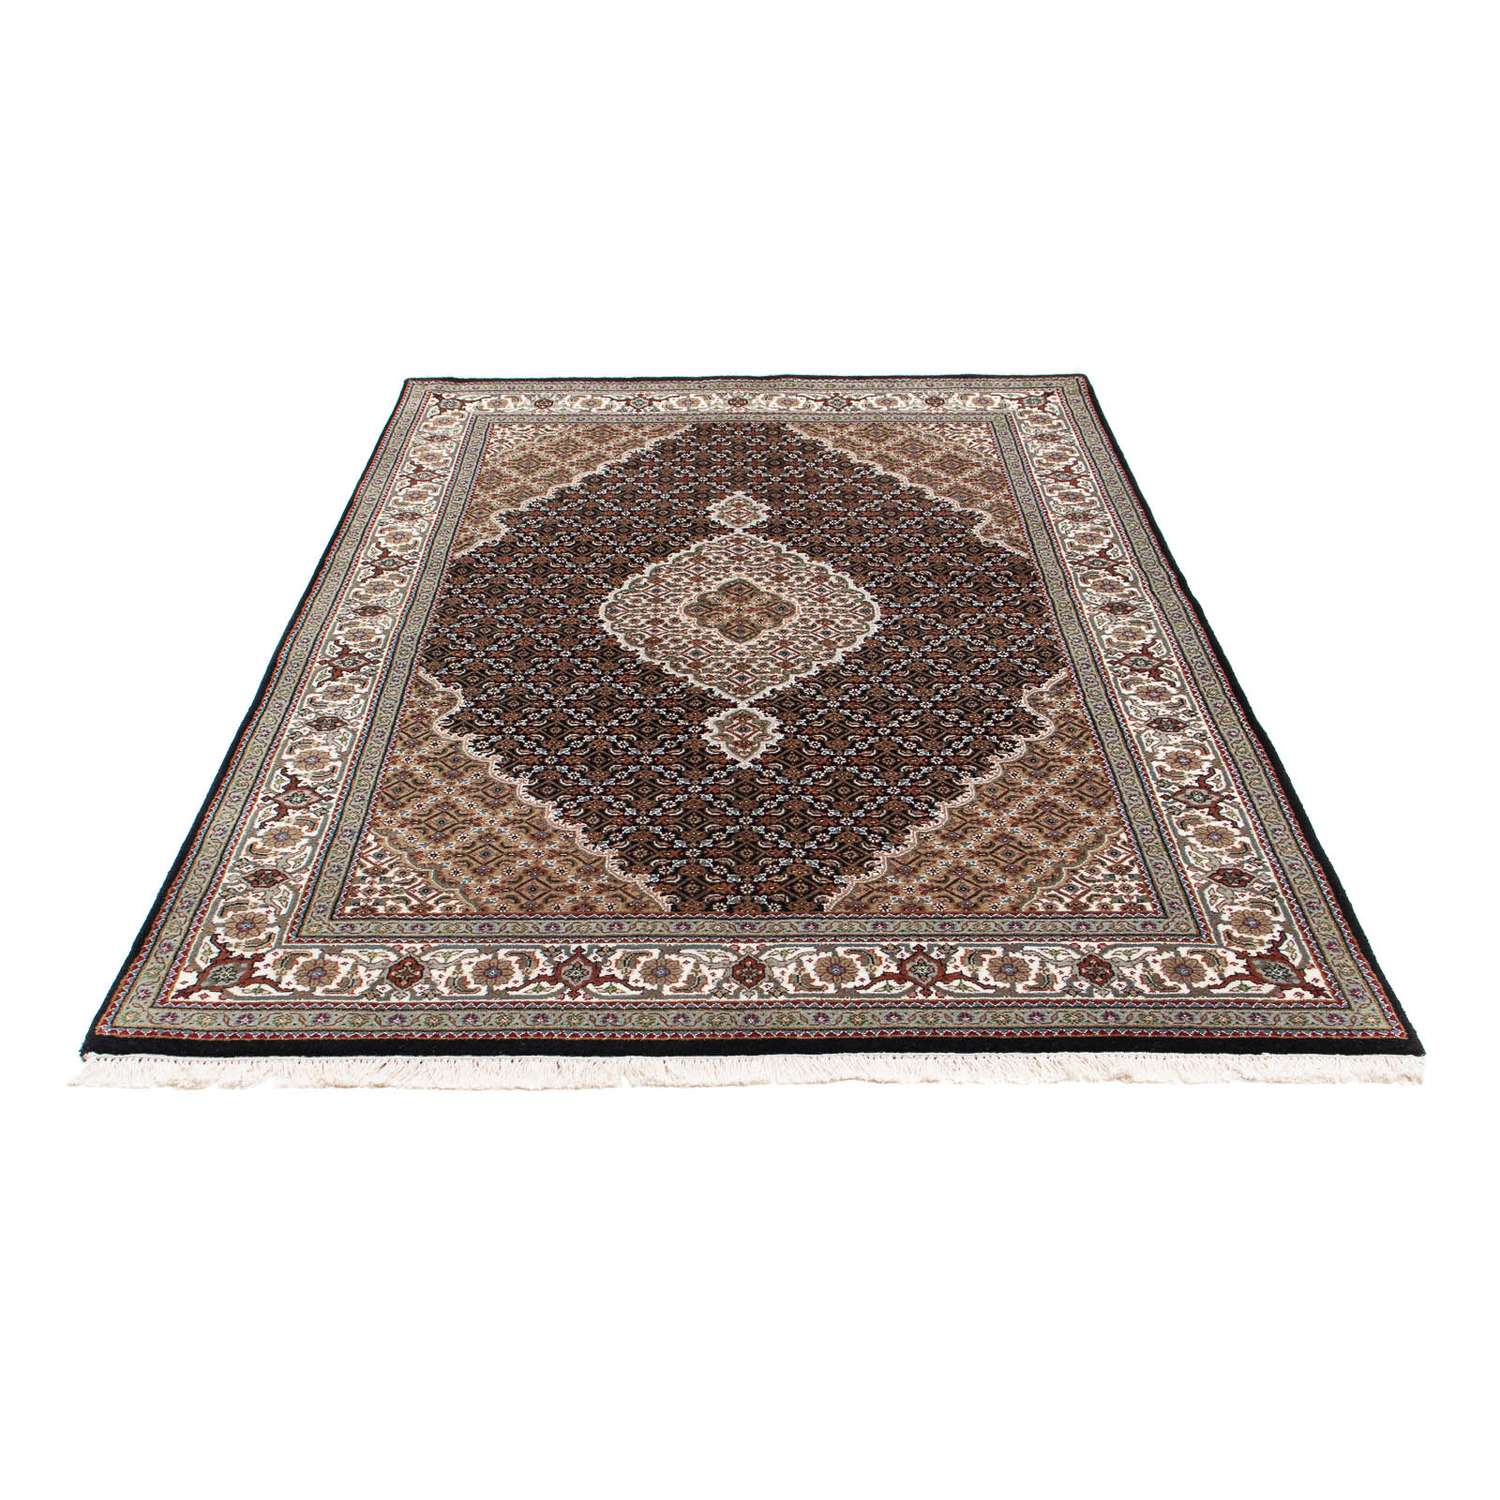 Perzisch tapijt - Tabriz - 202 x 138 cm - donkerblauw